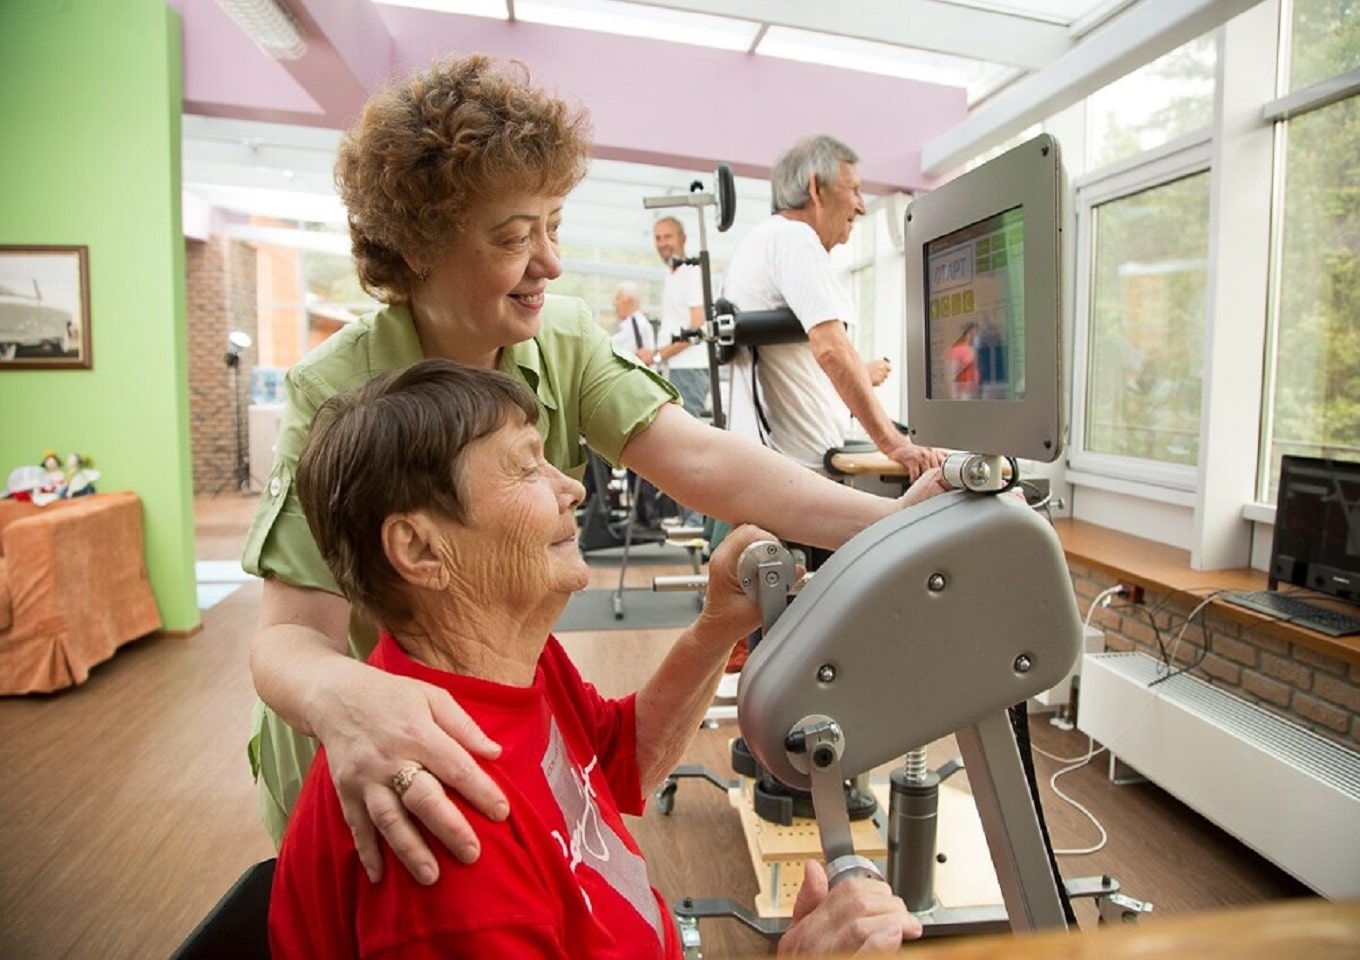 Описание основных преимуществ и пользы реабилитации в пансионате для пожилых людей после инфаркта.